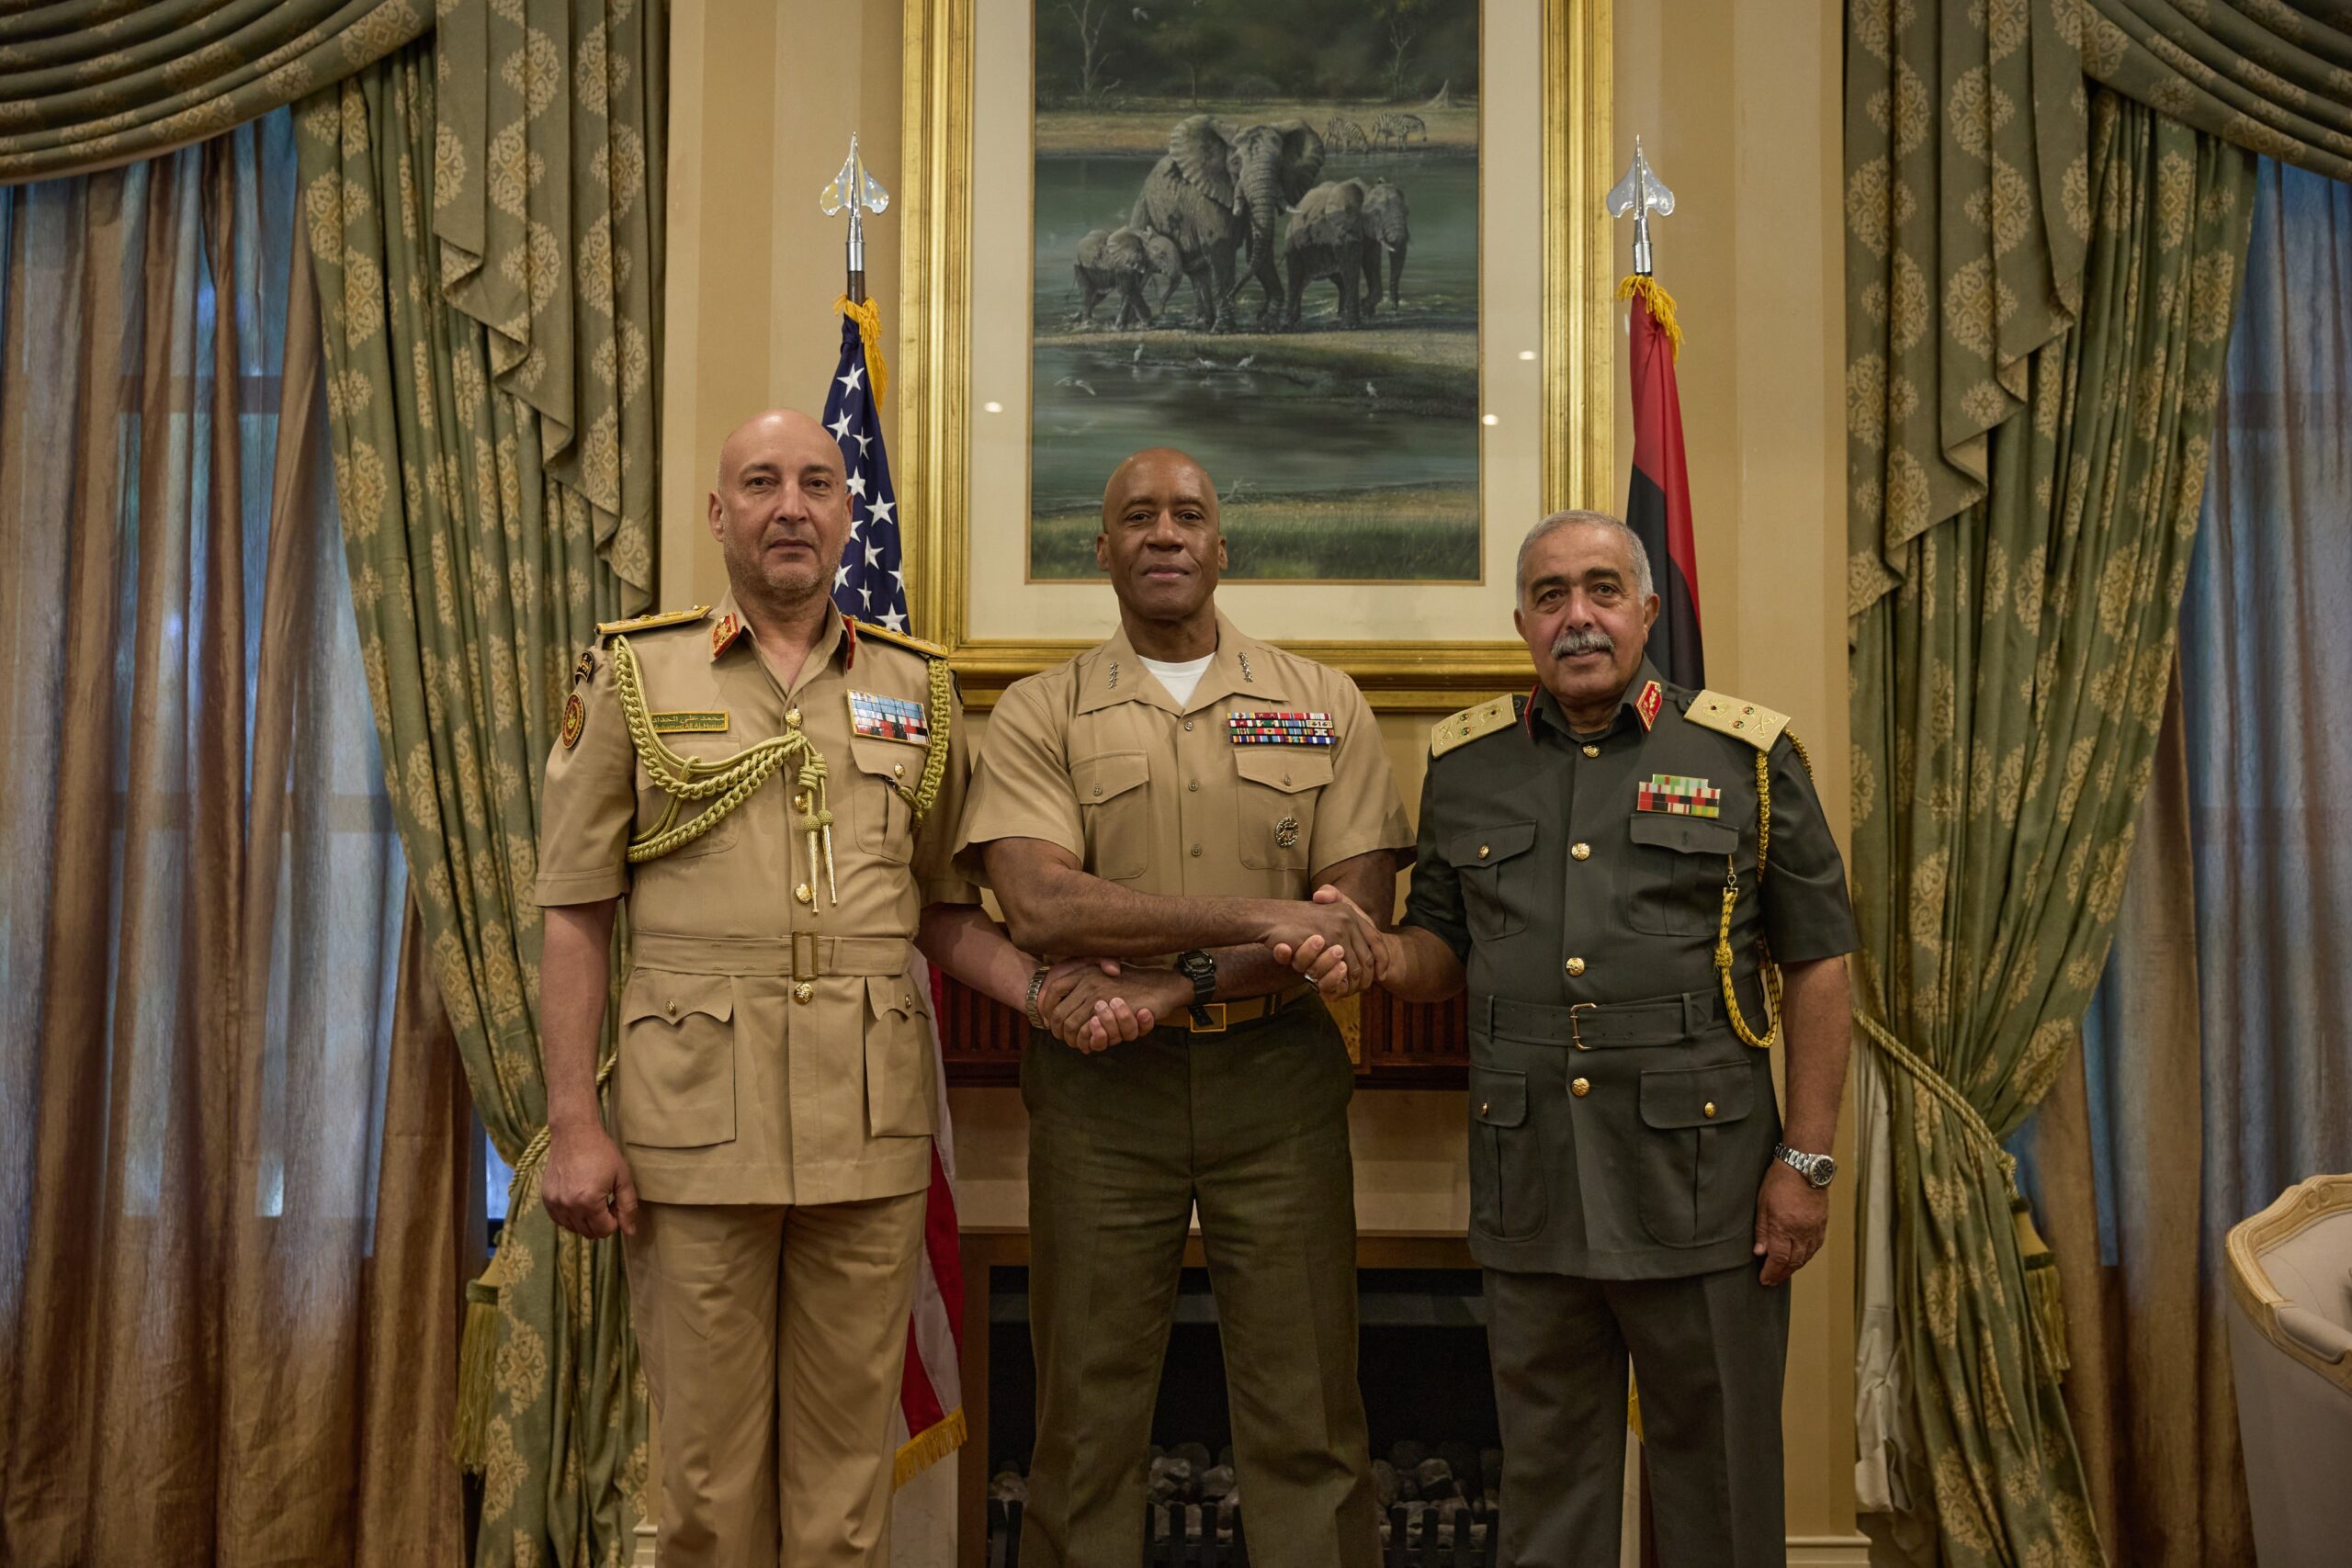 القيادة العسكرية في إفريقيا والأركان الأمريكية تؤكدان دعمهما لتوحيد الجيش وضمان السيادة الليبية